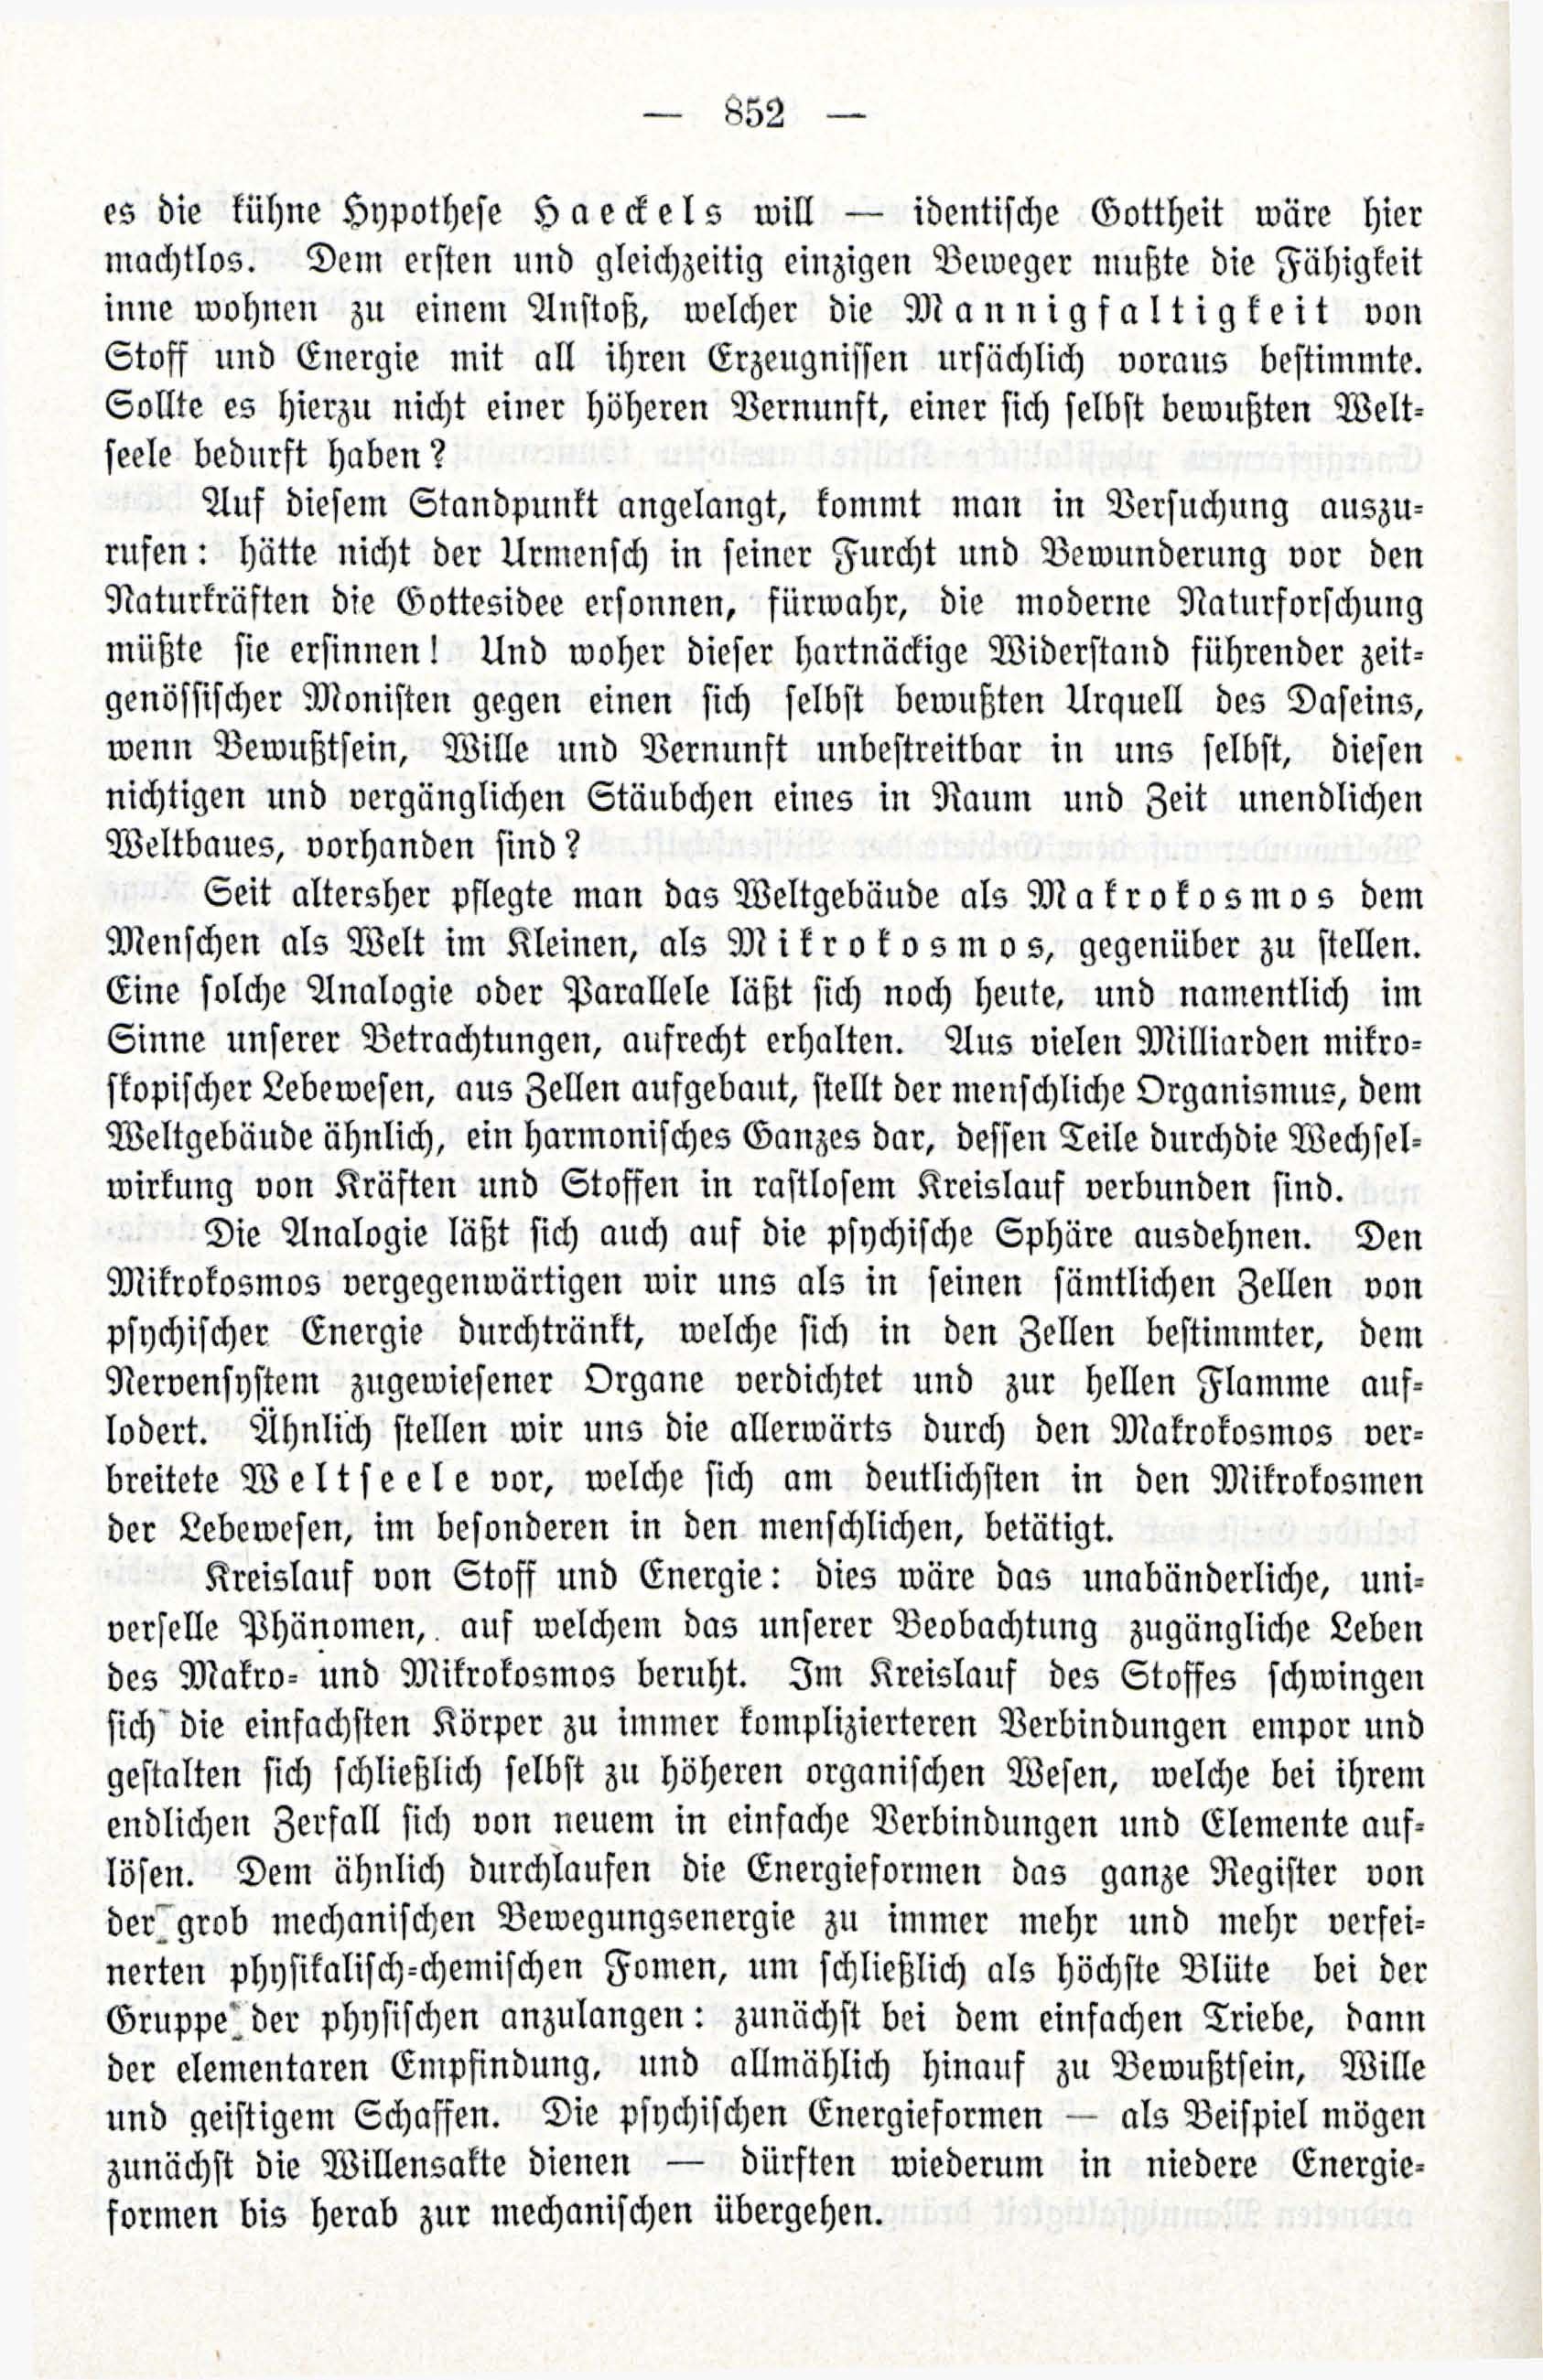 Deutsche Monatsschrift für Russland [3/12] (1914) | 68. (852) Main body of text